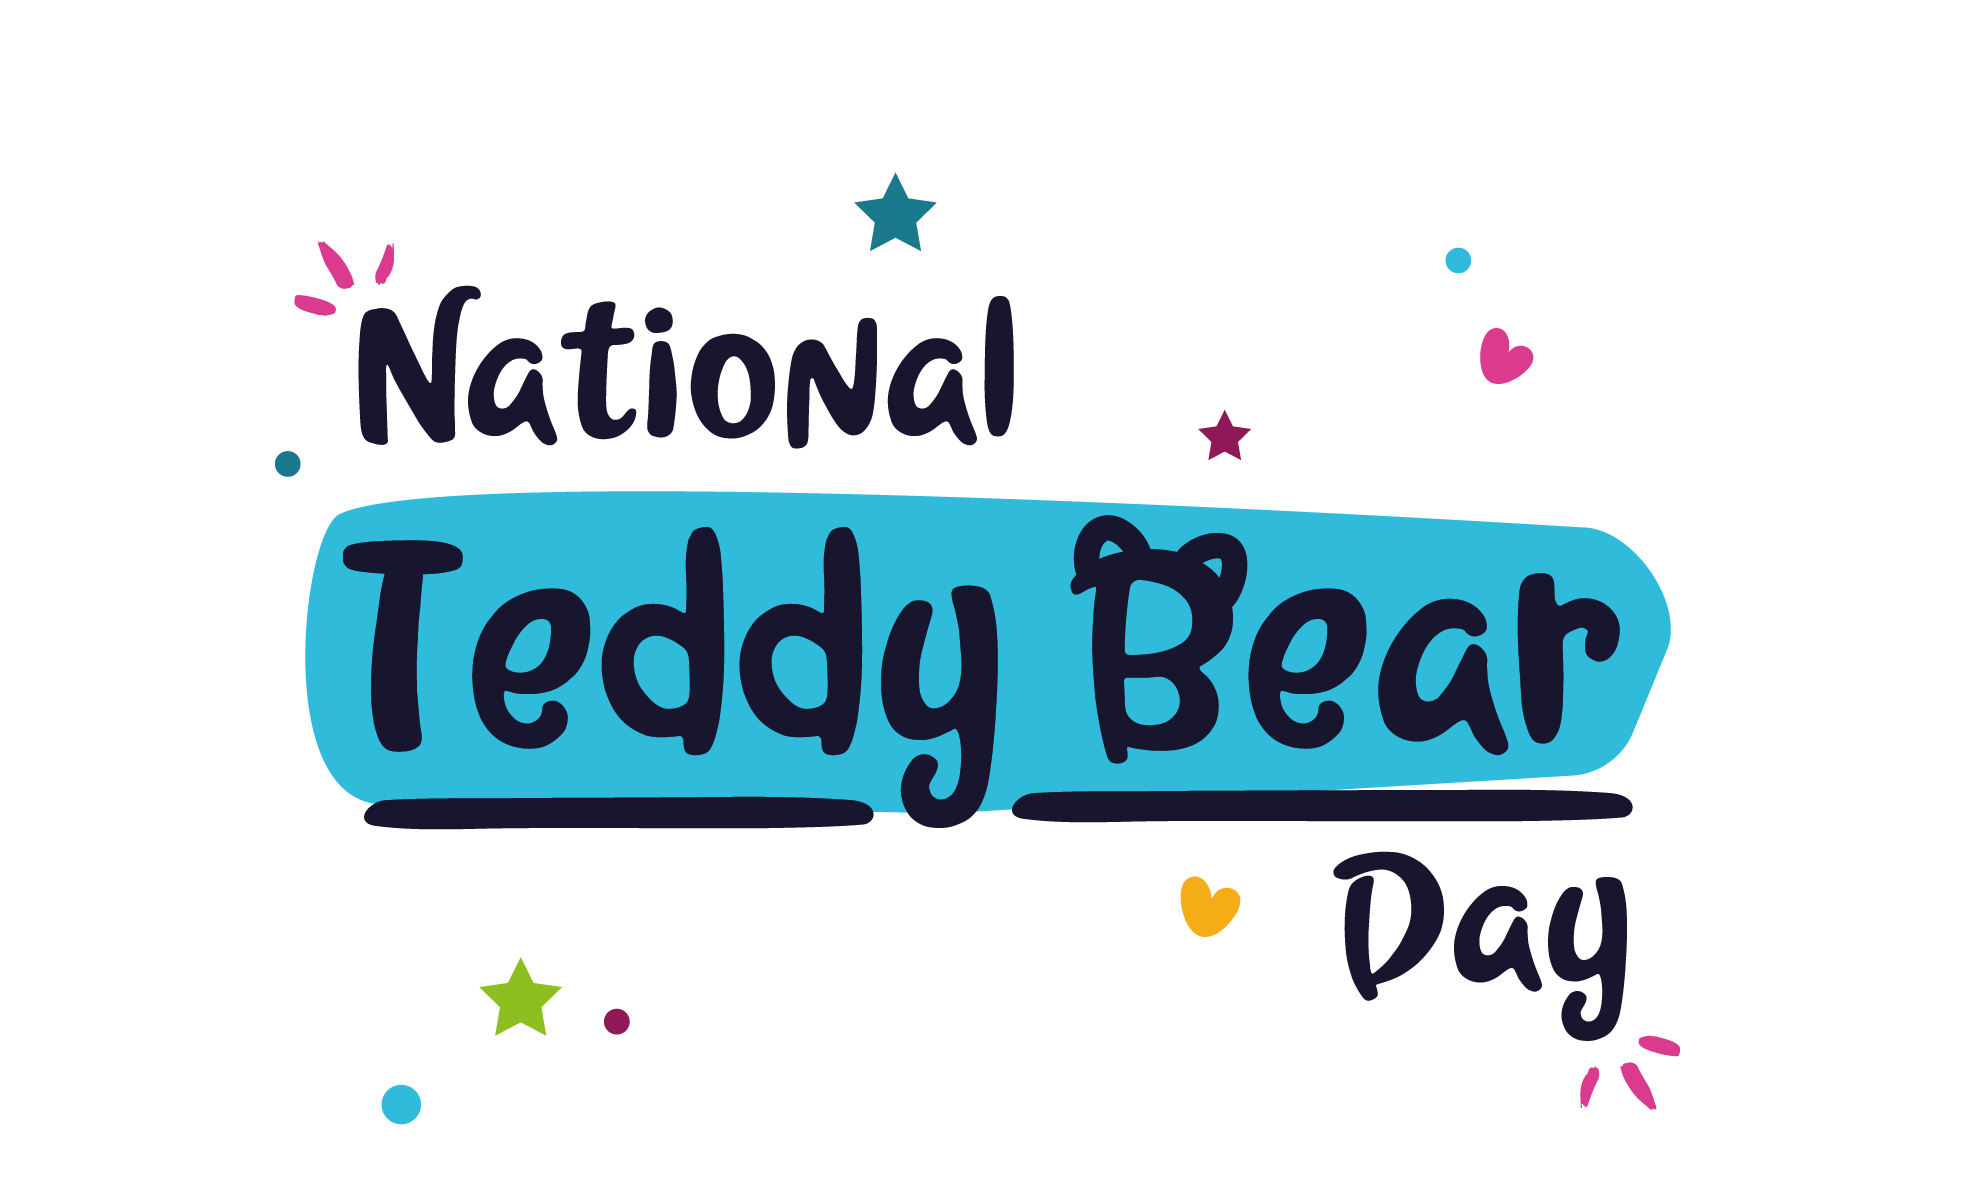 National Teddy Bear Day 2022